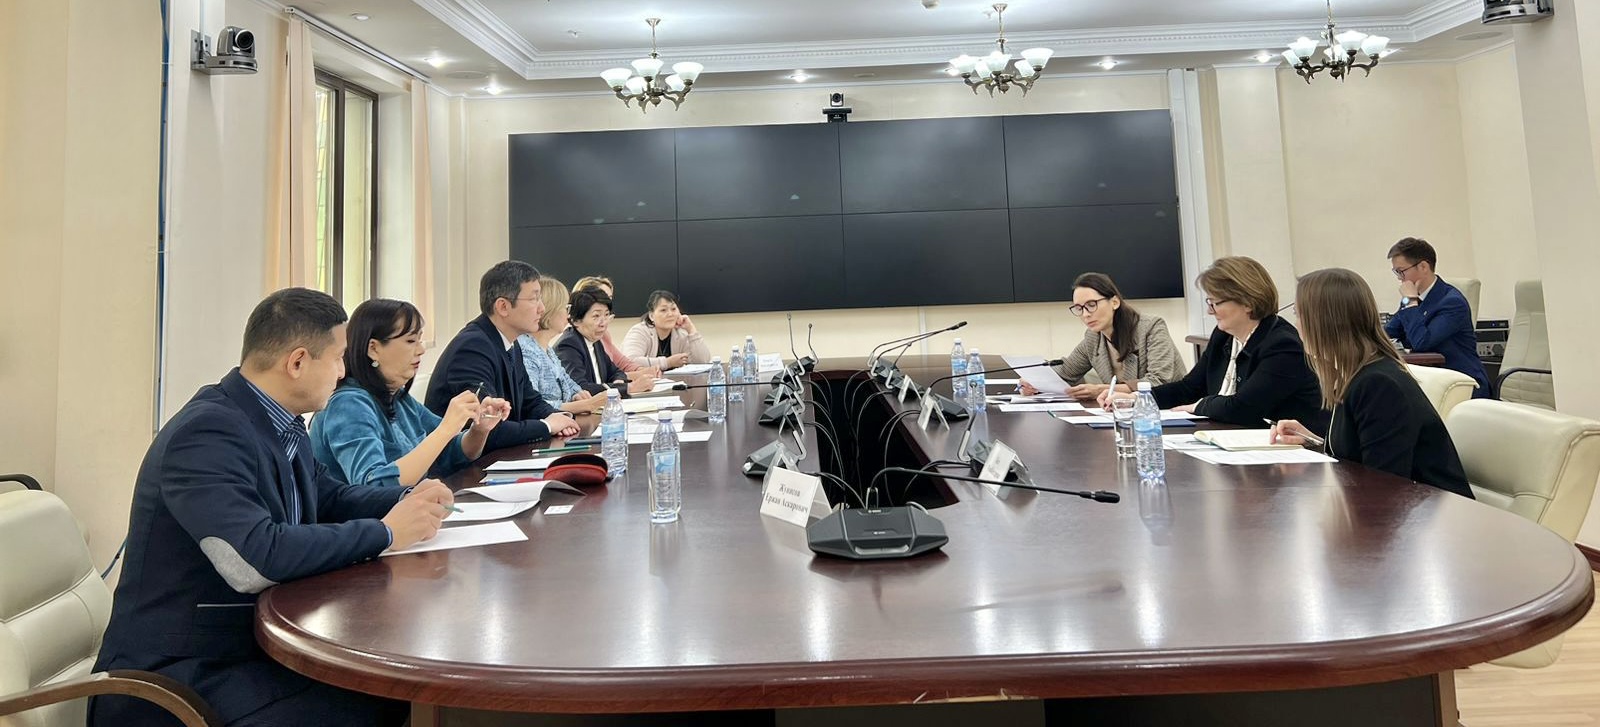 Т.Султангазиев провел встречу с Послом Великобритании по вопросам поставок вакцин